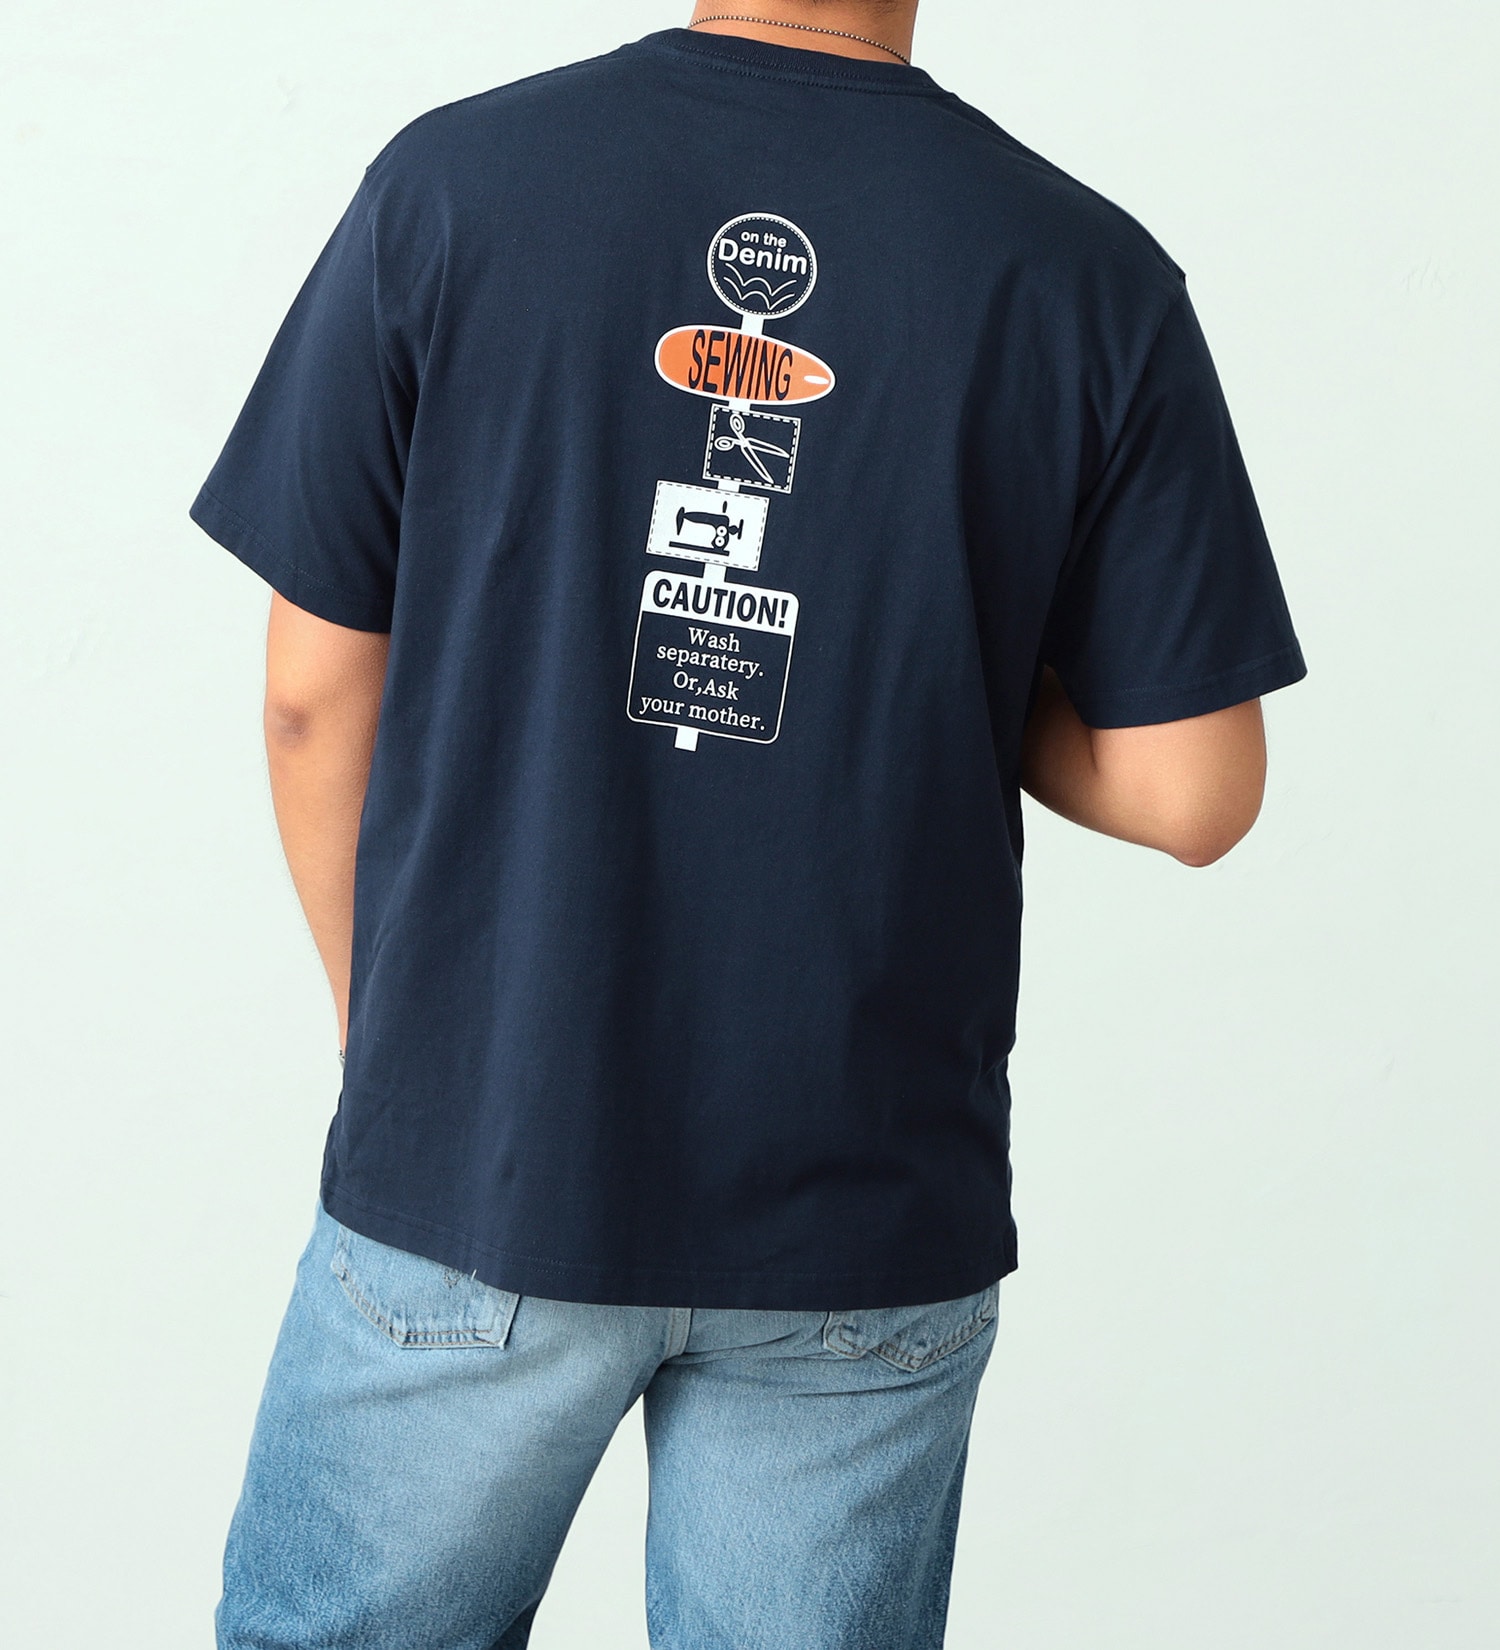 EDWIN(エドウイン)のイラストバックプリントTシャツ【アウトレット店舗・WEB限定】|トップス/Tシャツ/カットソー/メンズ|ネイビー